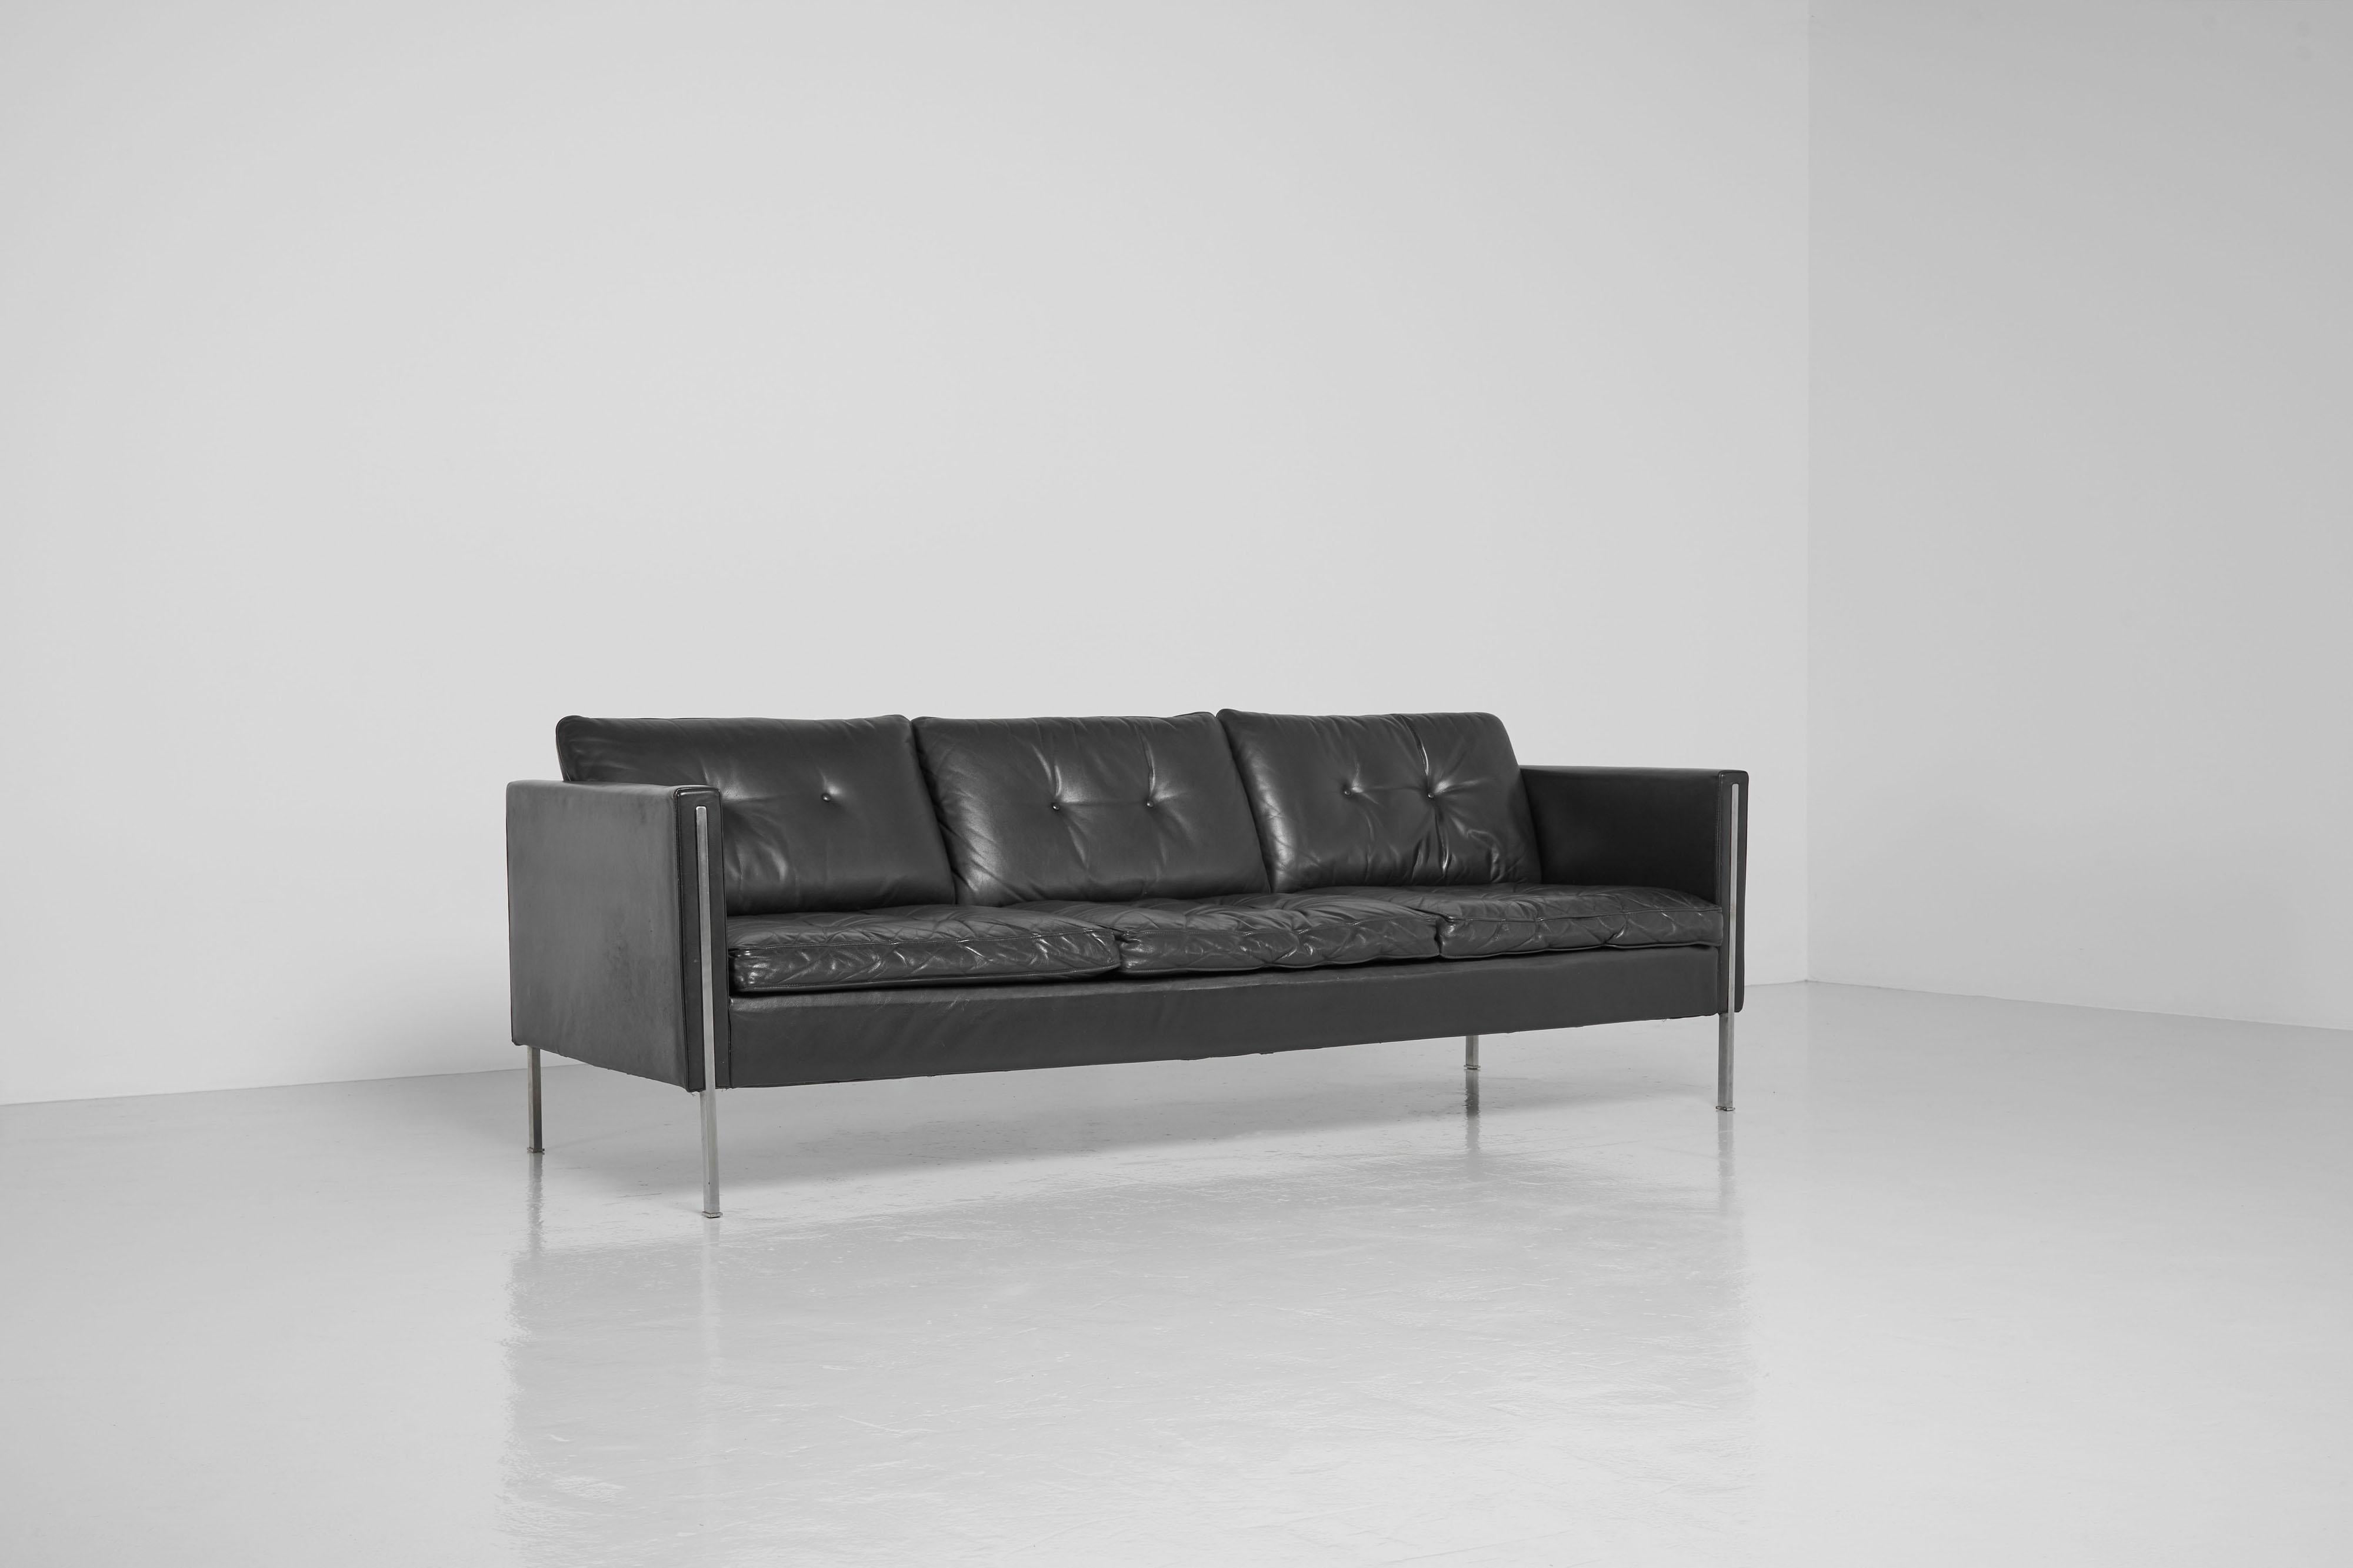 Joli canapé minimaliste modèle 442/3 conçu par Pierre Paulin et fabriqué par Artifort, Pays-Bas 1962. Il s'agit d'un canapé trois places modèle 442/3 qui est le plus grand de cette série, un canapé en cuir noir de qualité et pieds en acier chromé